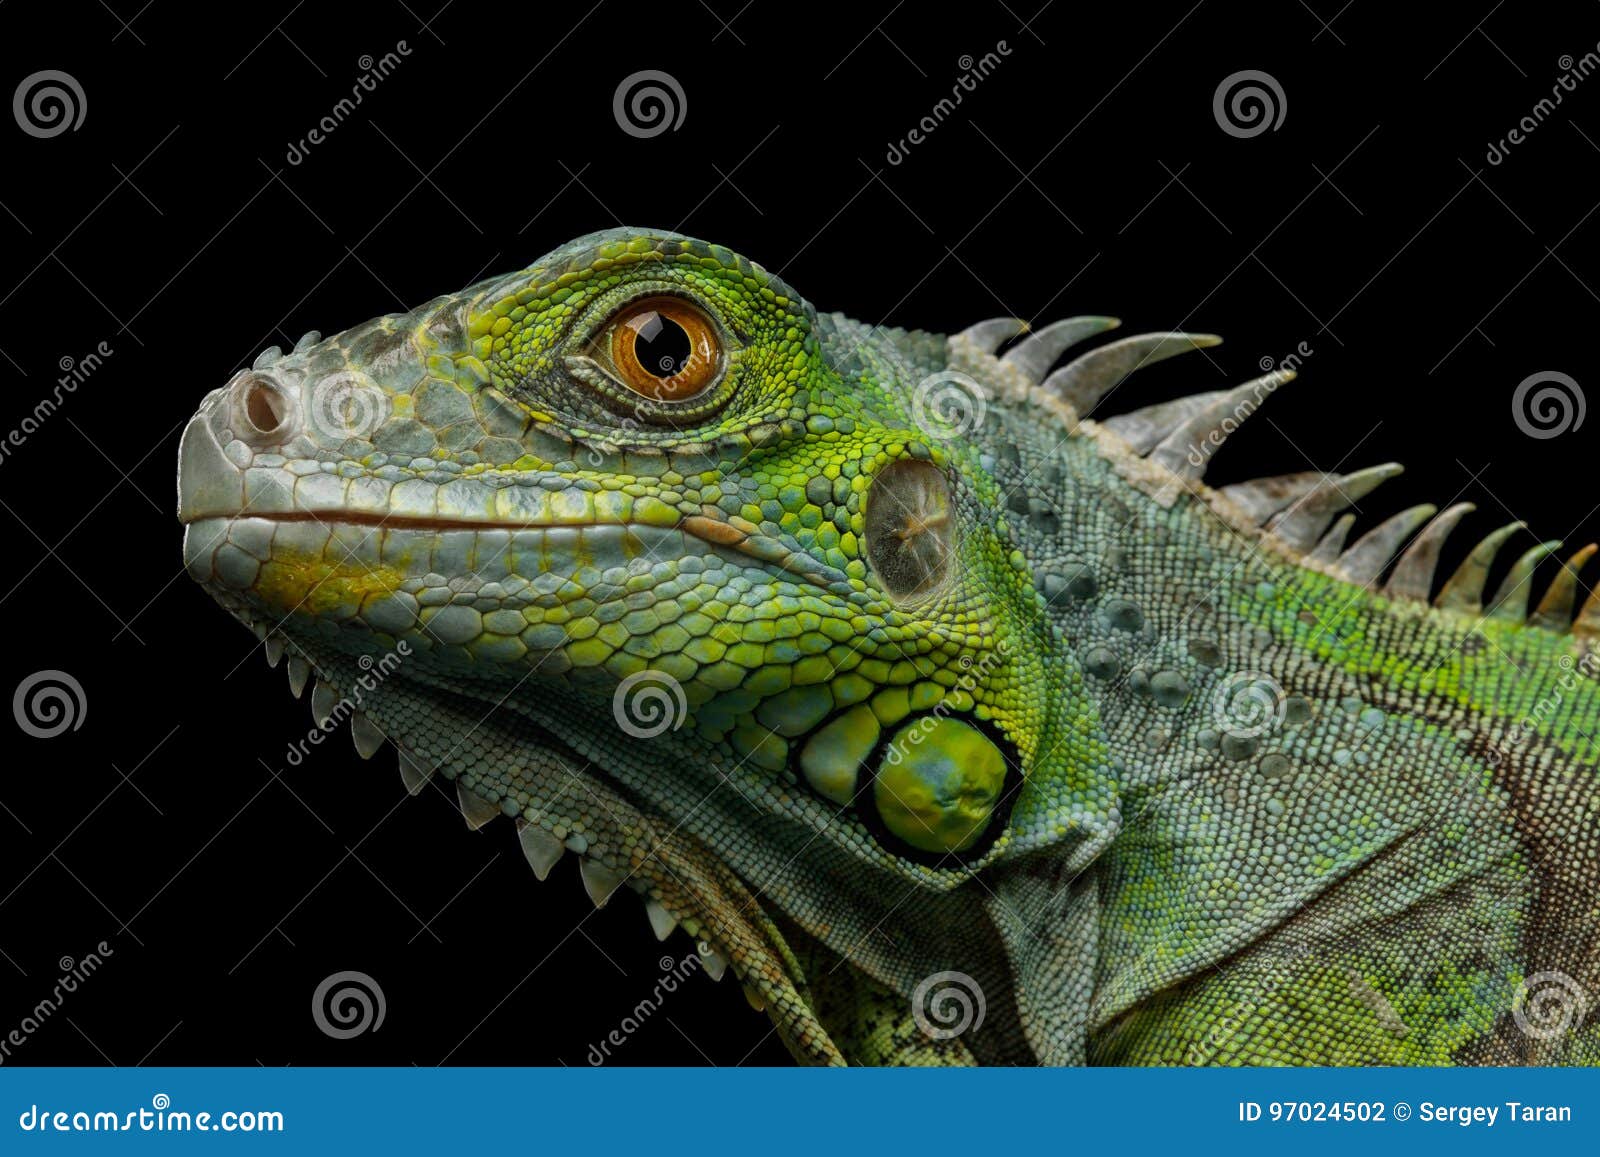 green iguana  on black background